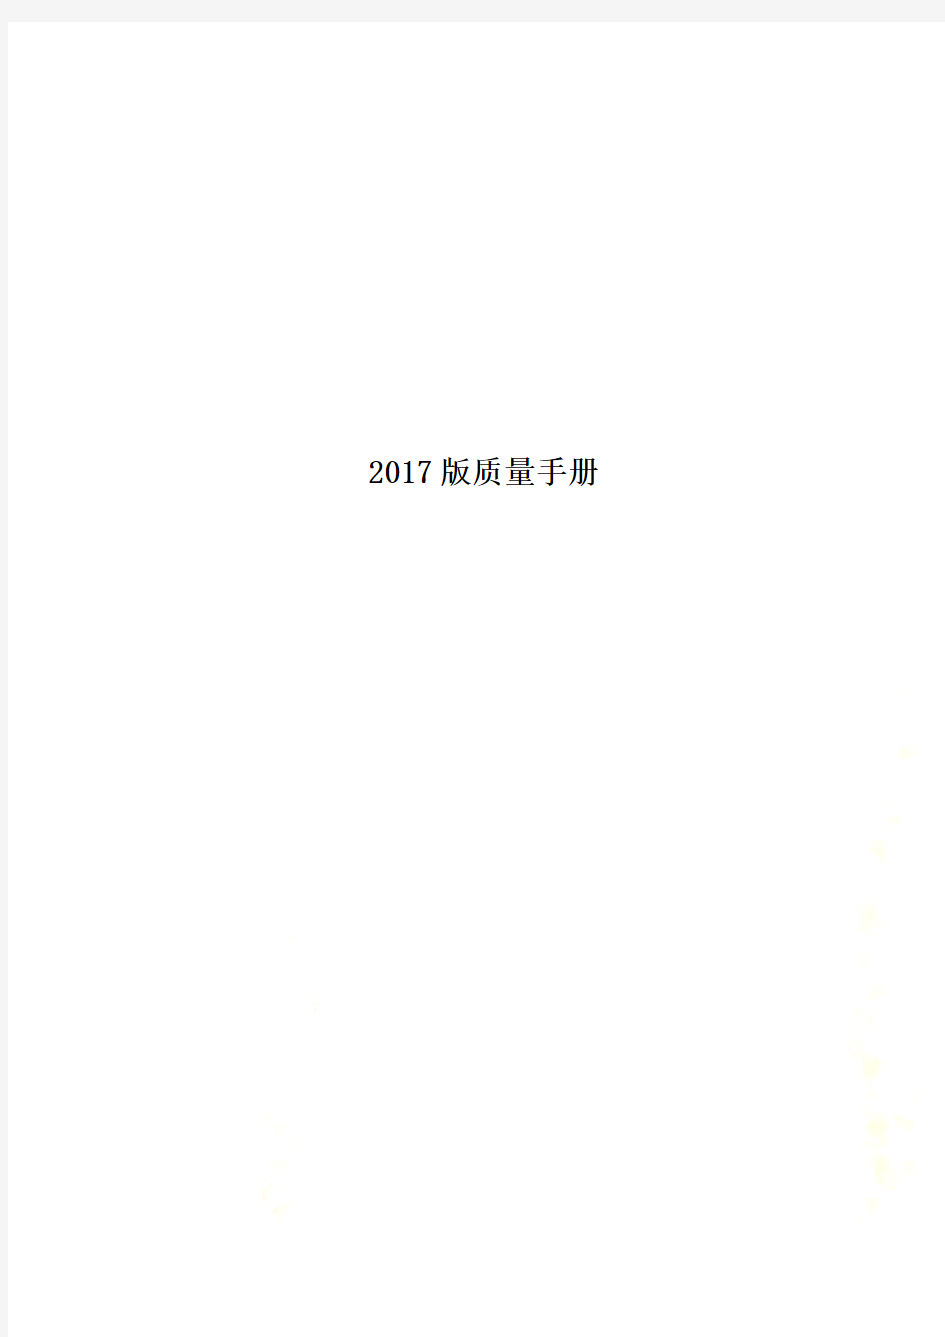 2017版质量手册